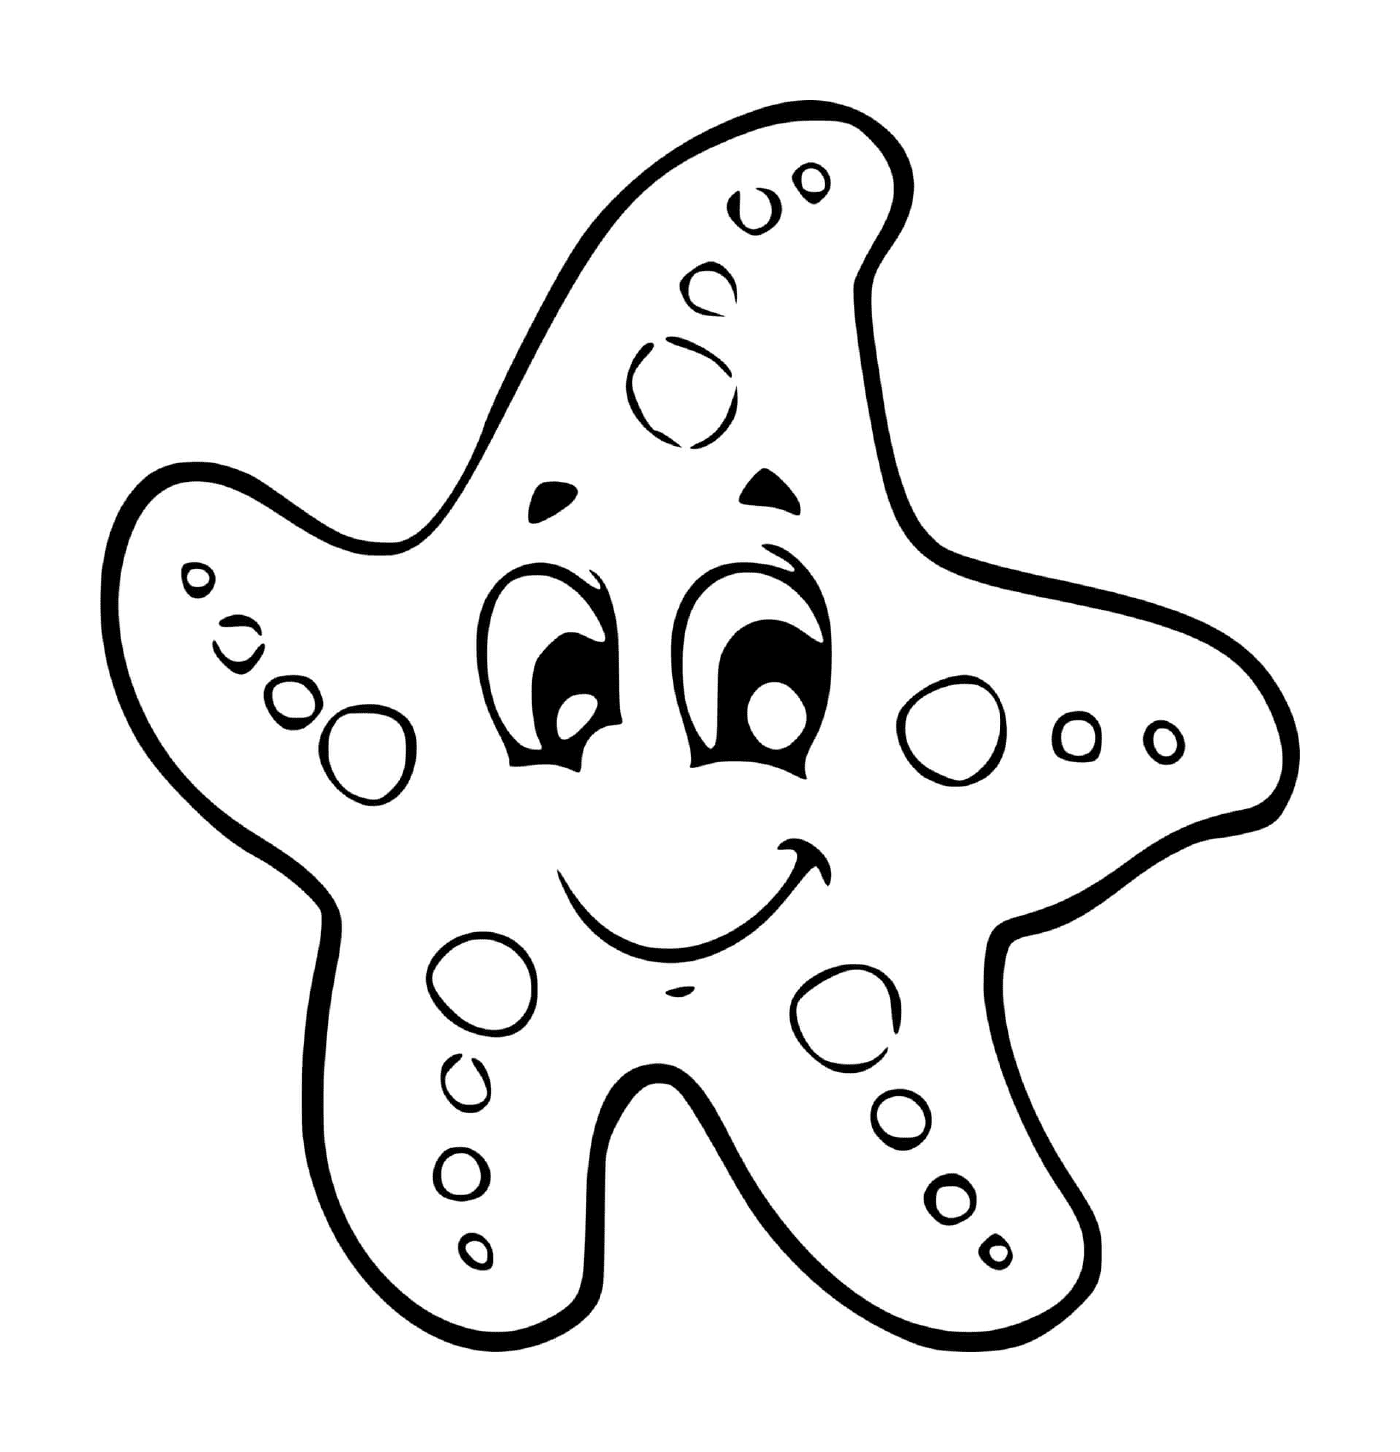   Une étoile de mer pour les enfants en grande section maternelle 